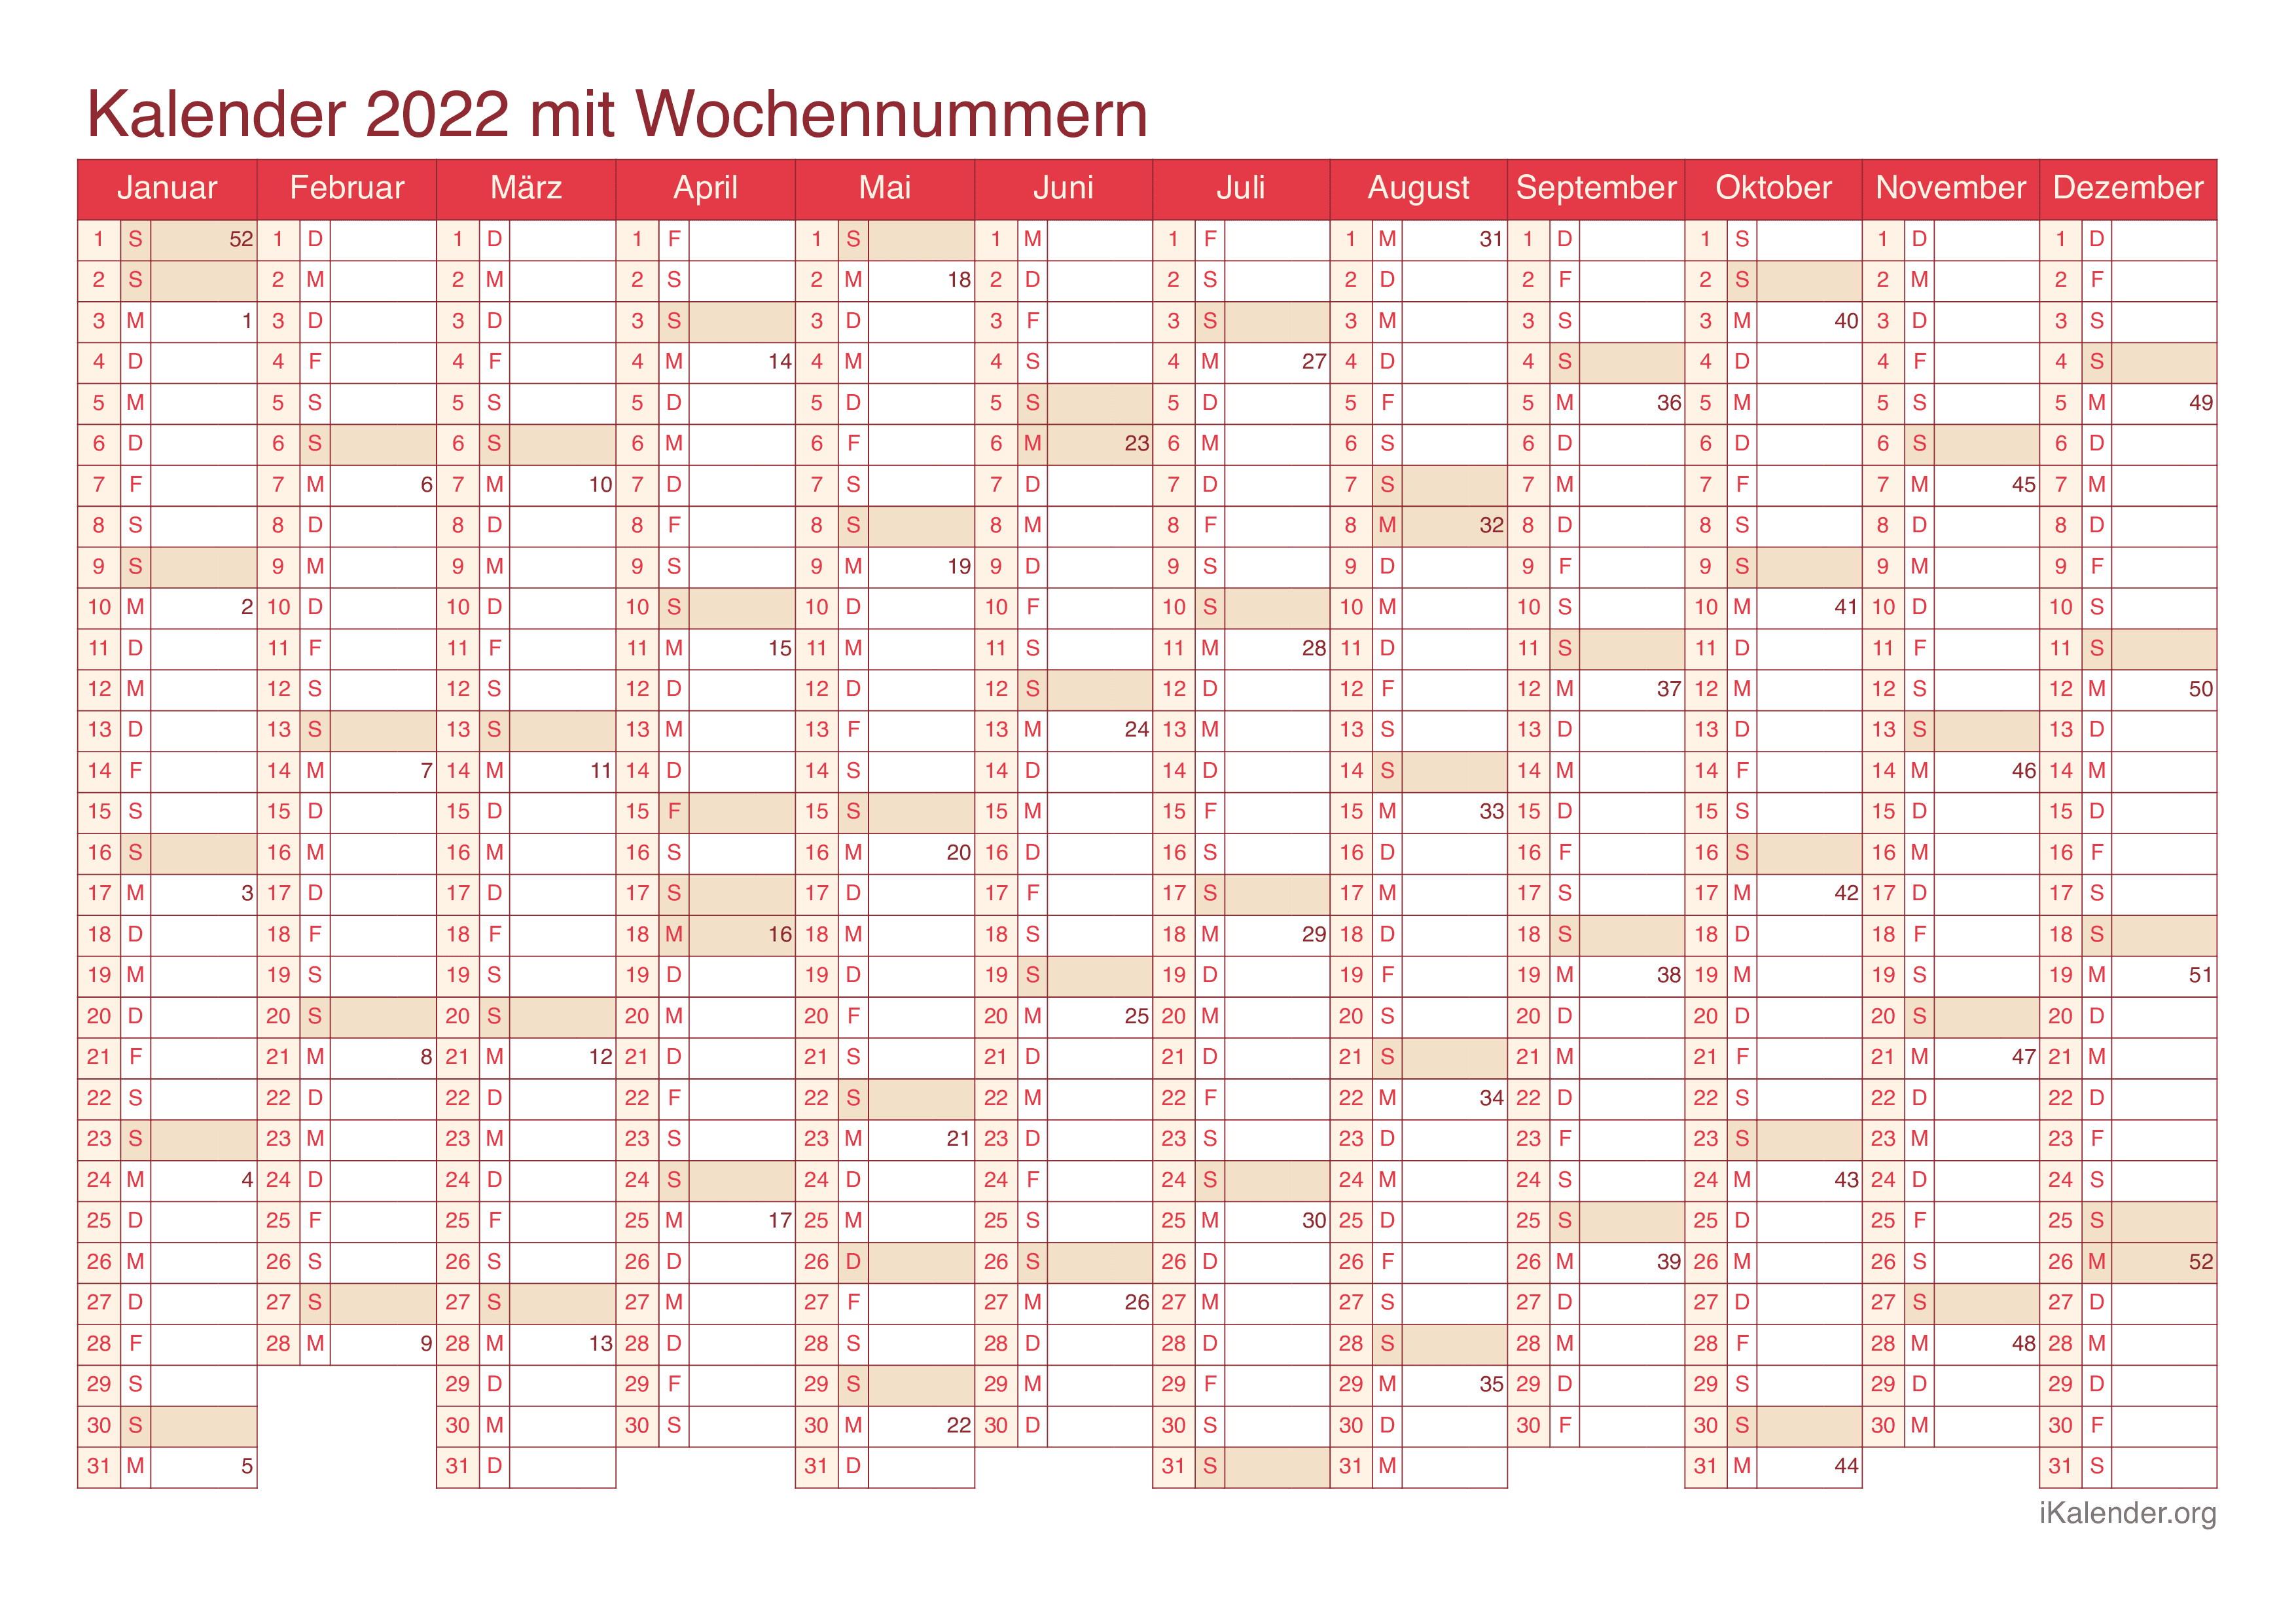 Jahreskalender 2022 mit Wochennummern - Cherry